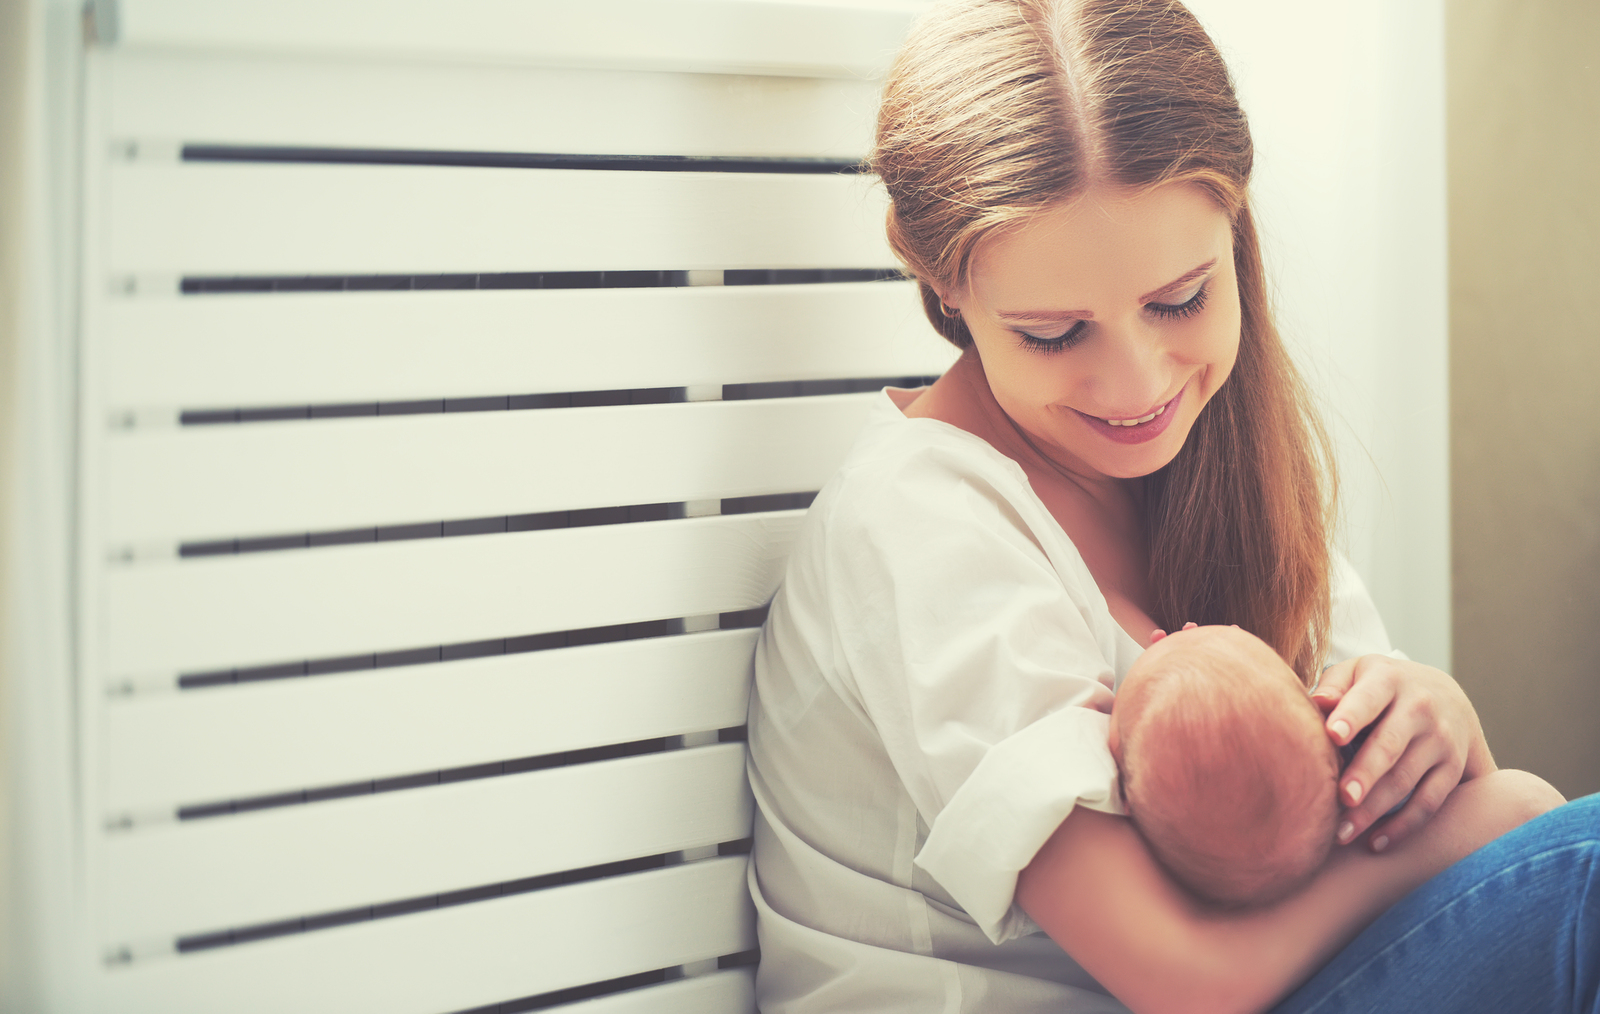 Veza koju majka postigne s djetetom tijekom dojenja jedinstvena je i ništa je ne može nadoknaditi